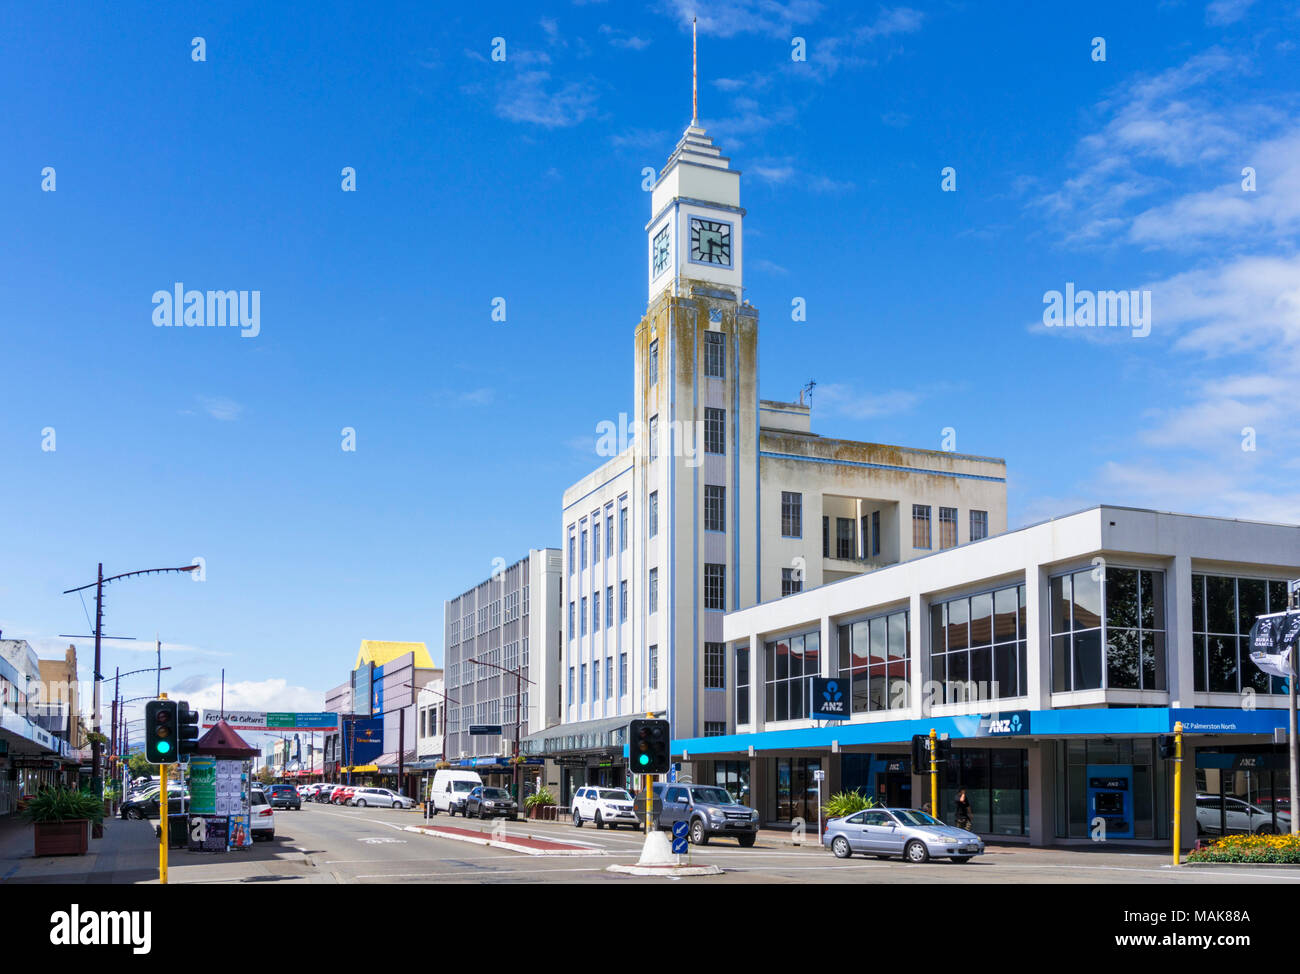 Neuseeland palmerston Stadtzentrum broadway North Avenue anz Bank Neuseeland North Island. Stockfoto